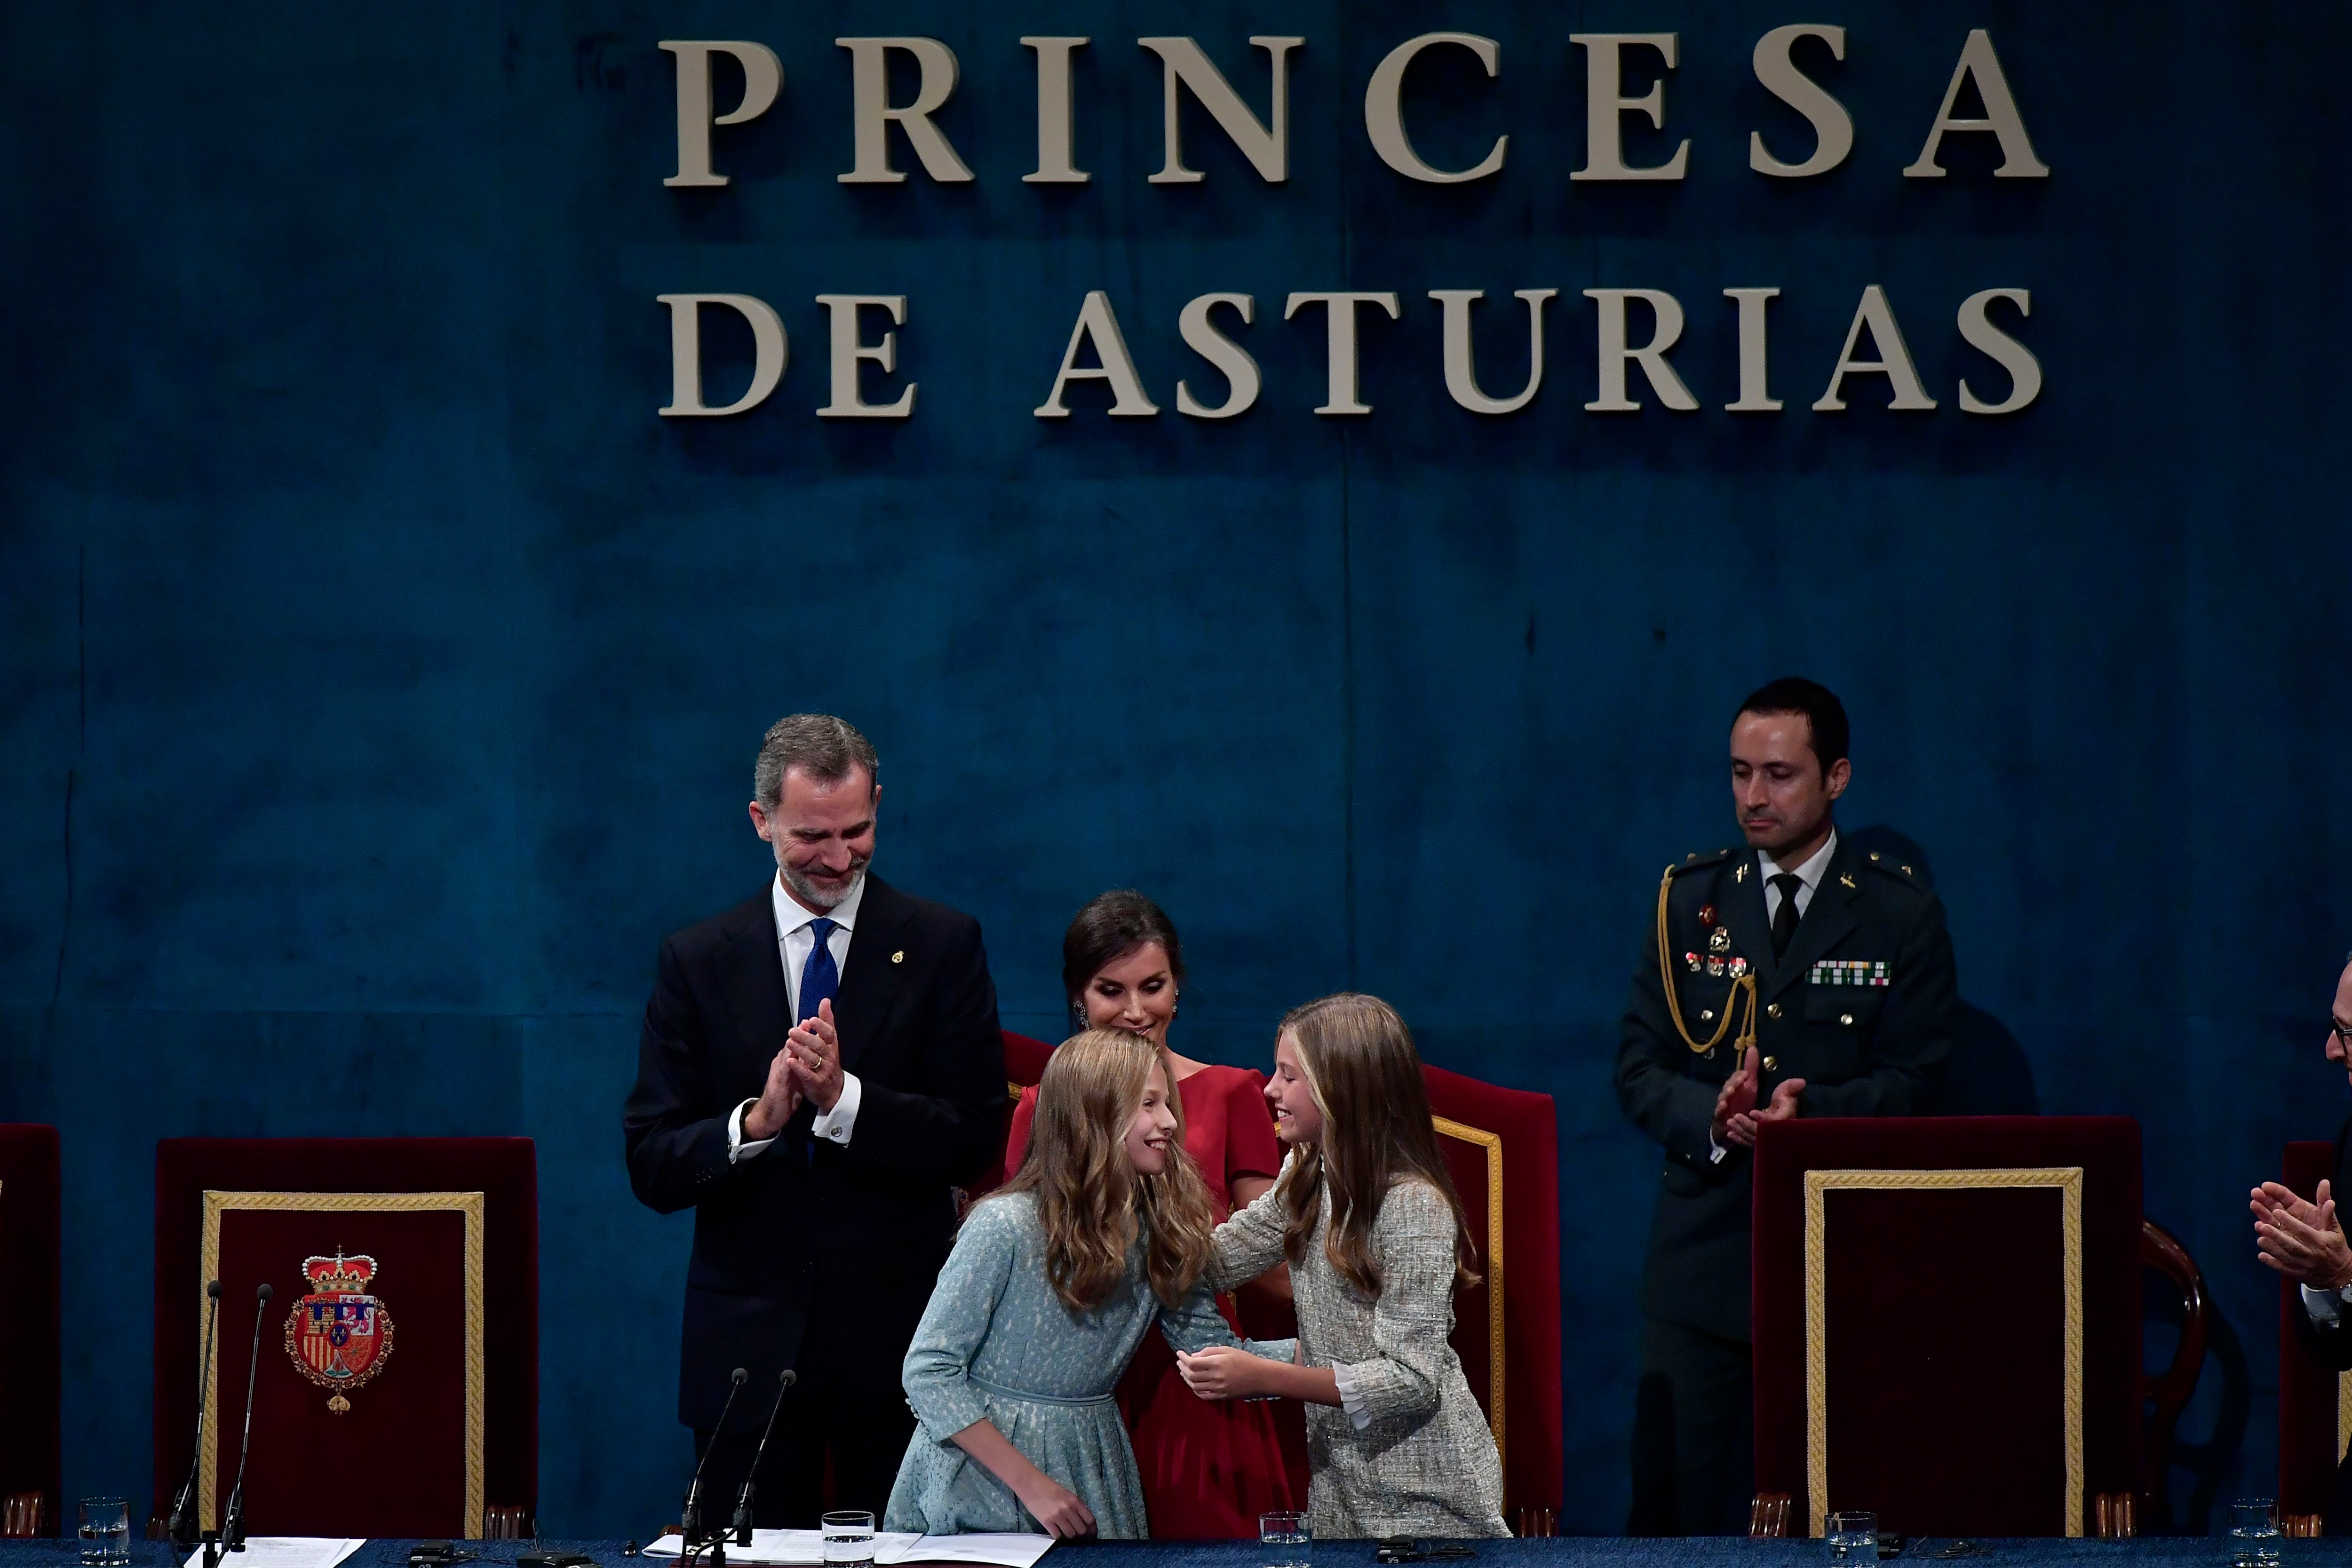 La princesa Leonor en la ceremonia del premio Princesa de Asturias (Foto: AP /Alvaro Barrientos)